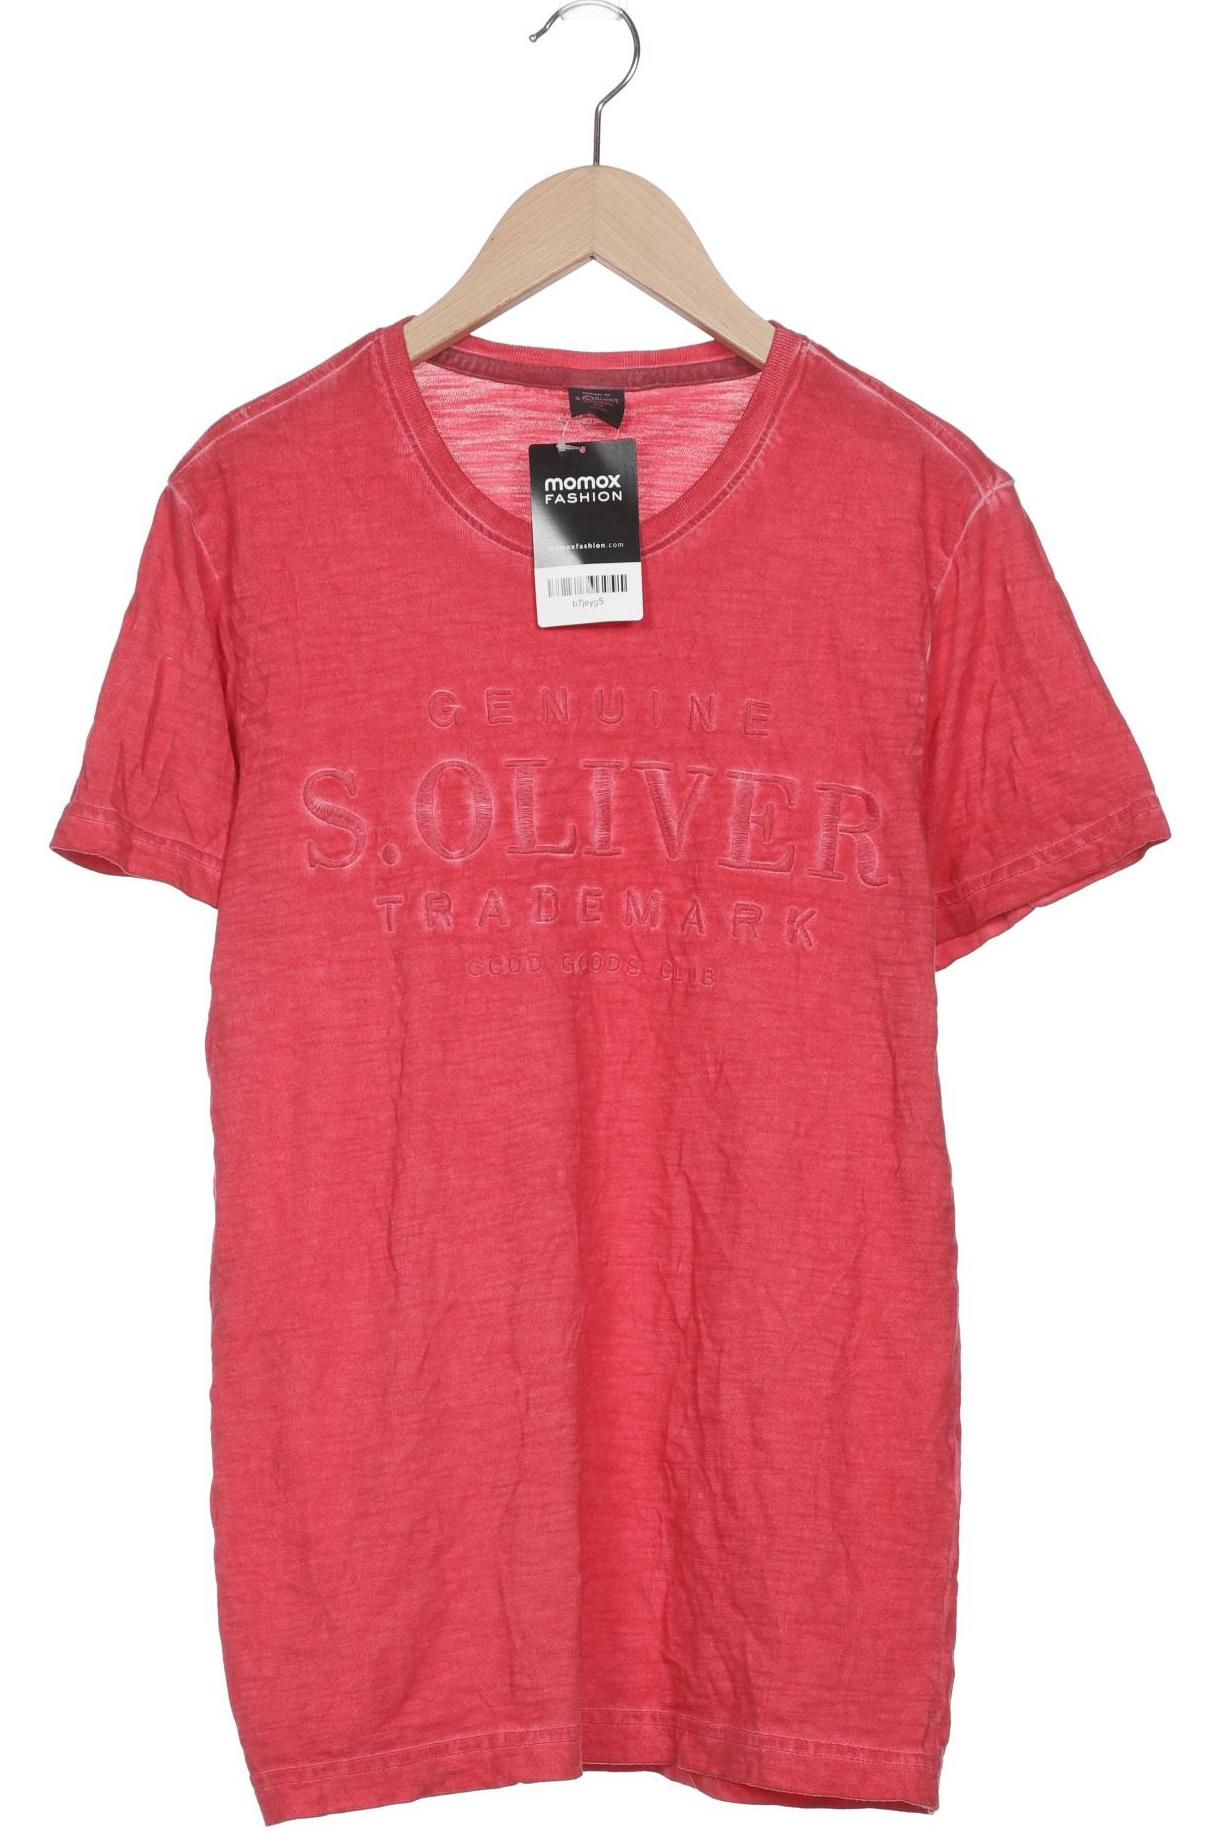 s.Oliver Mädchen T-Shirt, rot von s.Oliver